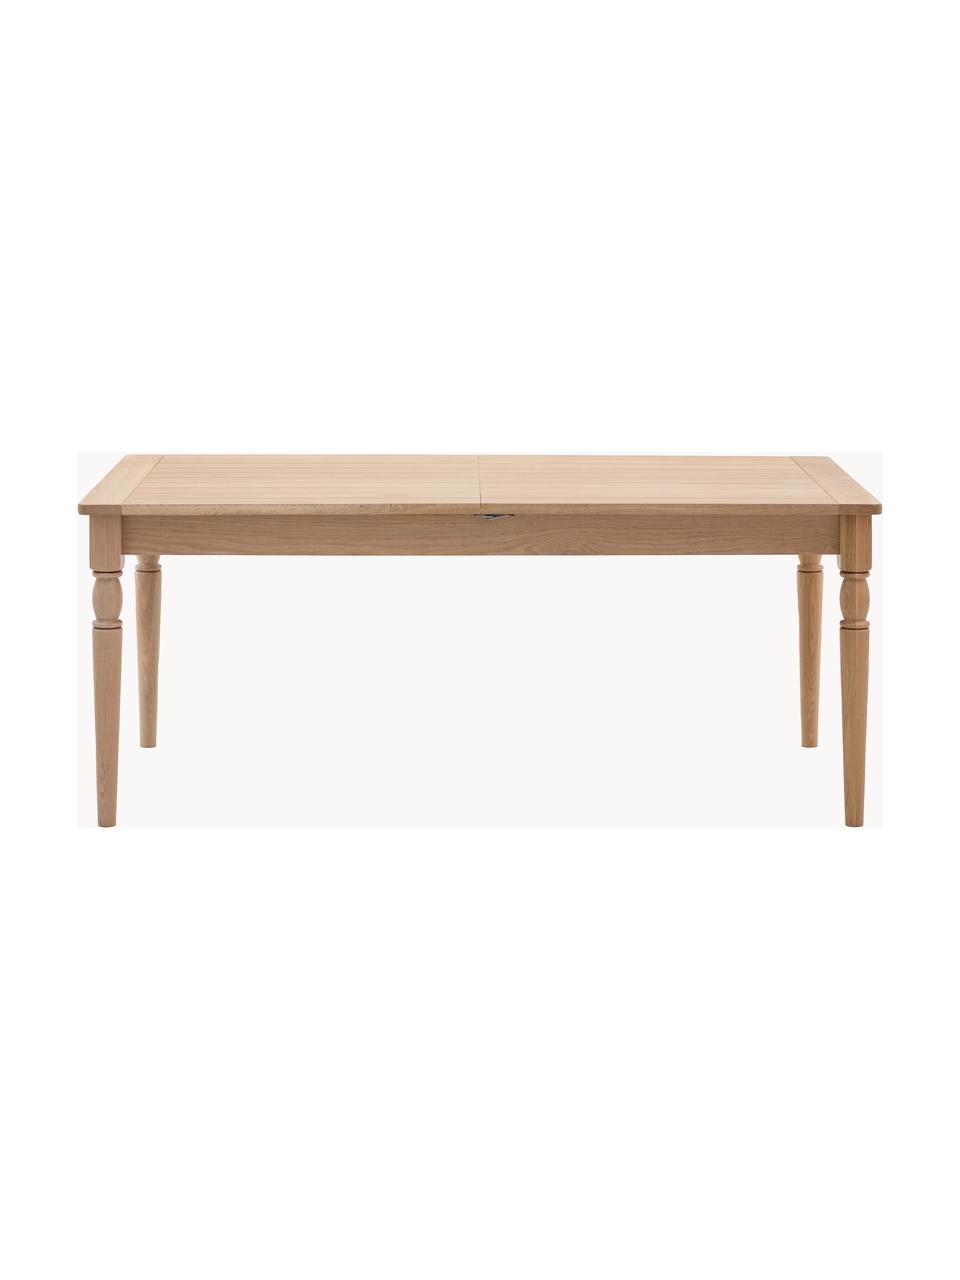 Rozkládací dřevěný jídelní stůl Eton, ručně vyrobený, 180 - 230 x 95 cm, Dřevo, Š 180-230 cm, H 95 cm